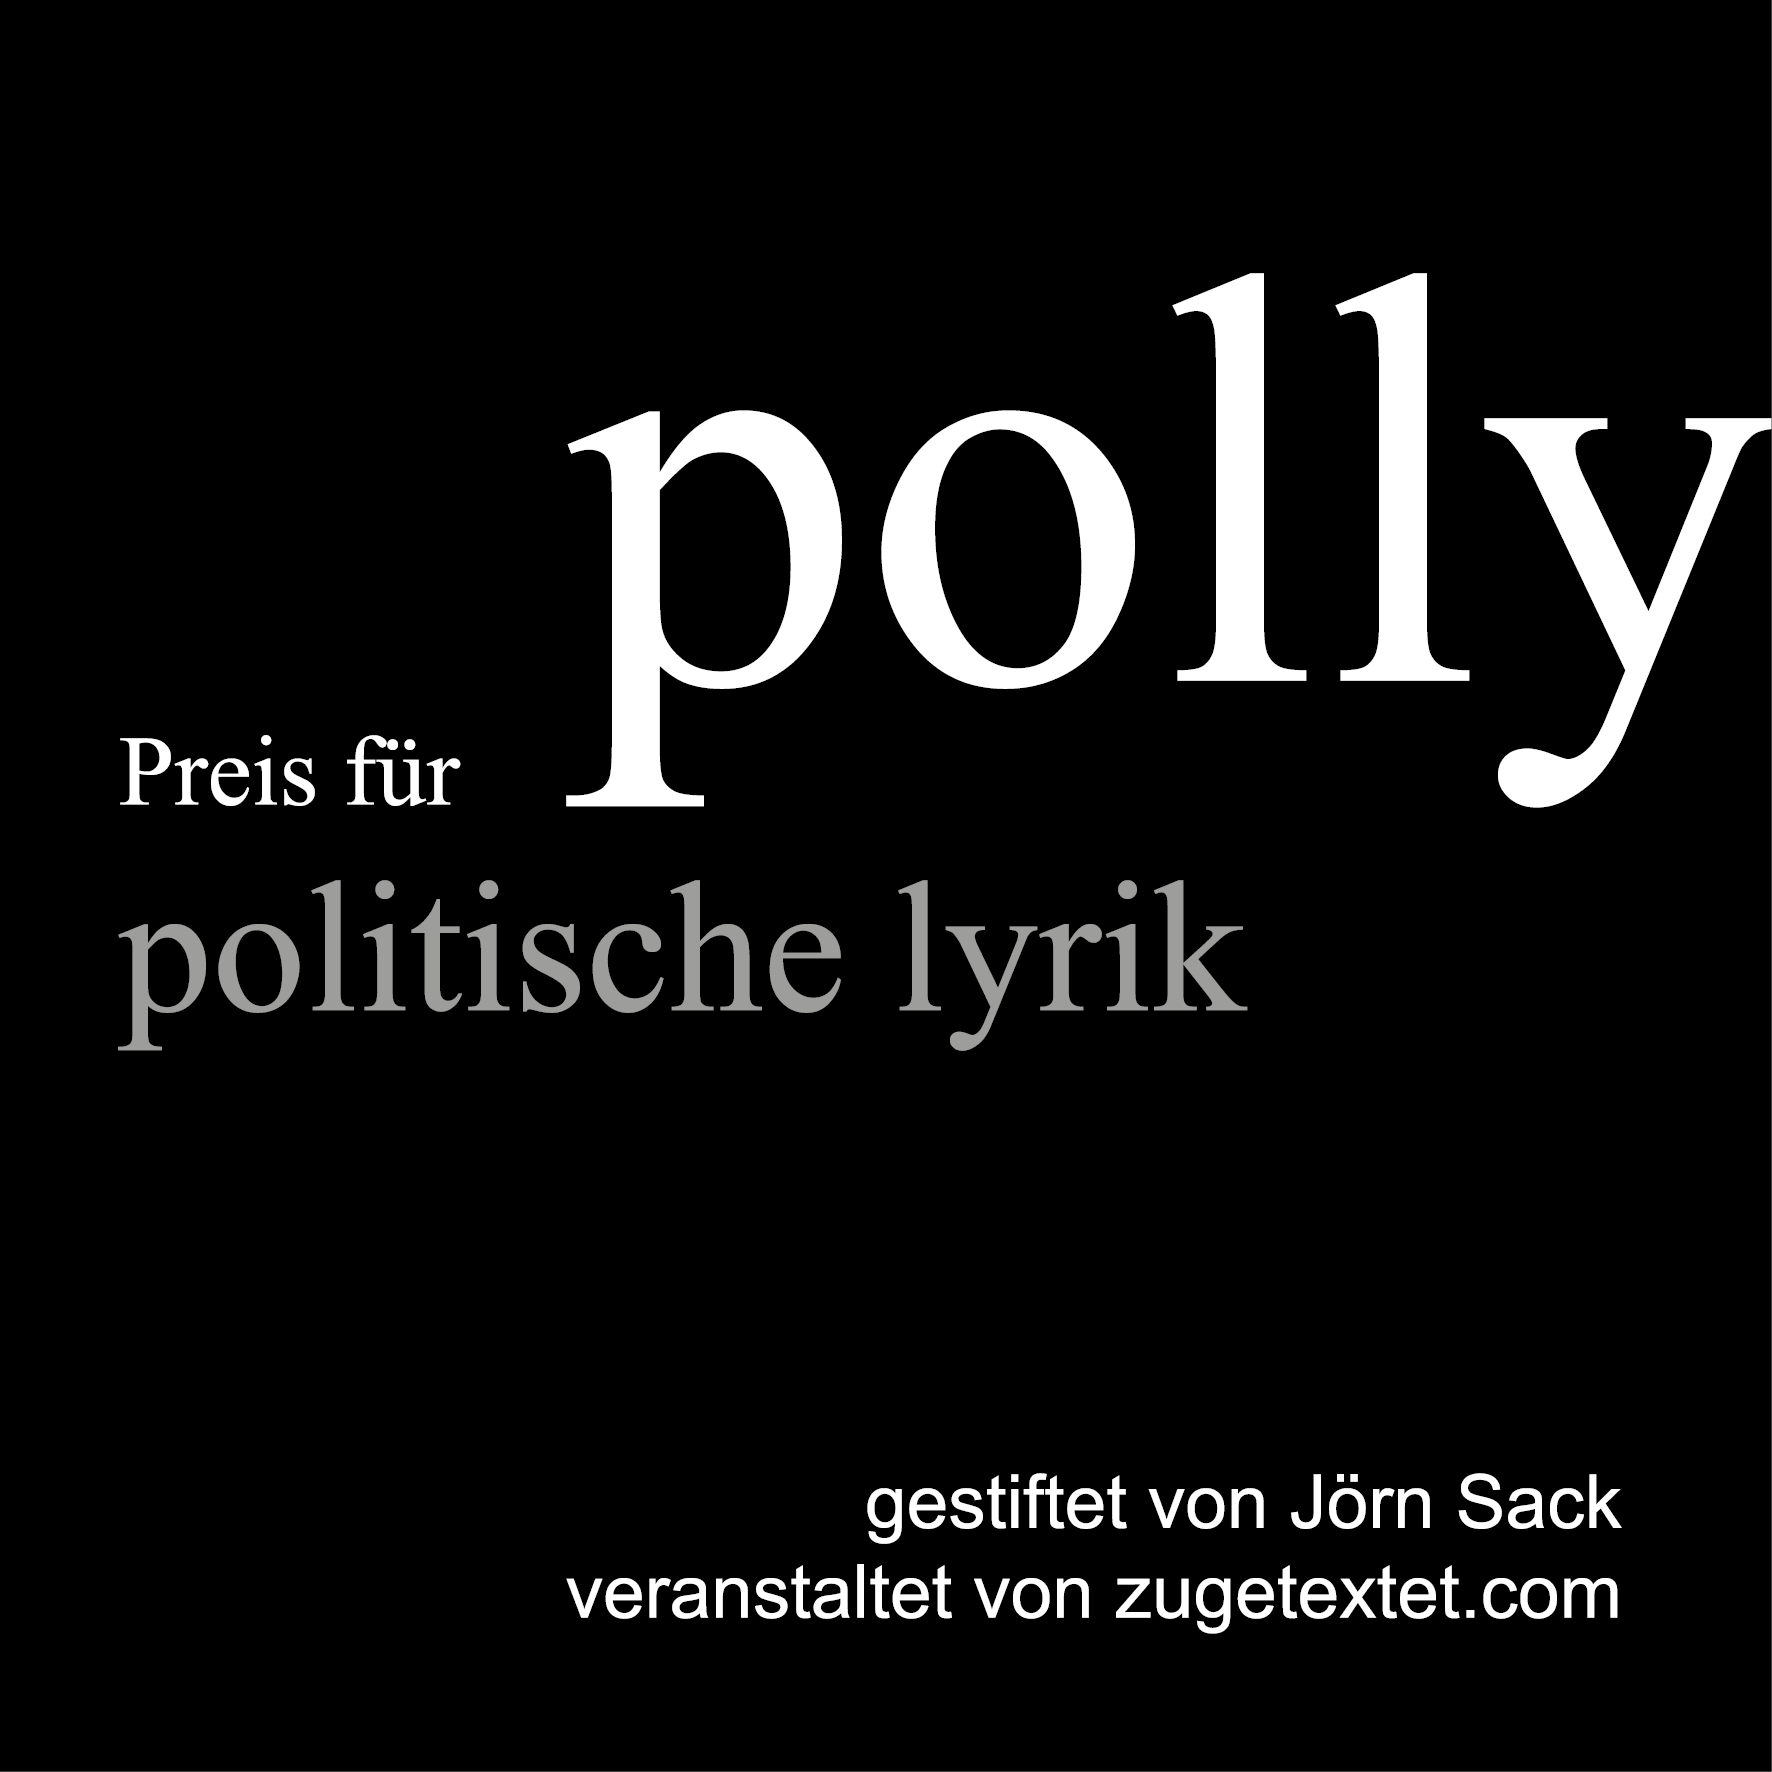 Interview mit Jörn Sack, Initiator und Stifter des Polly-Preises, Lyriker von Herzen, Schriftsteller, Privatgelehrter